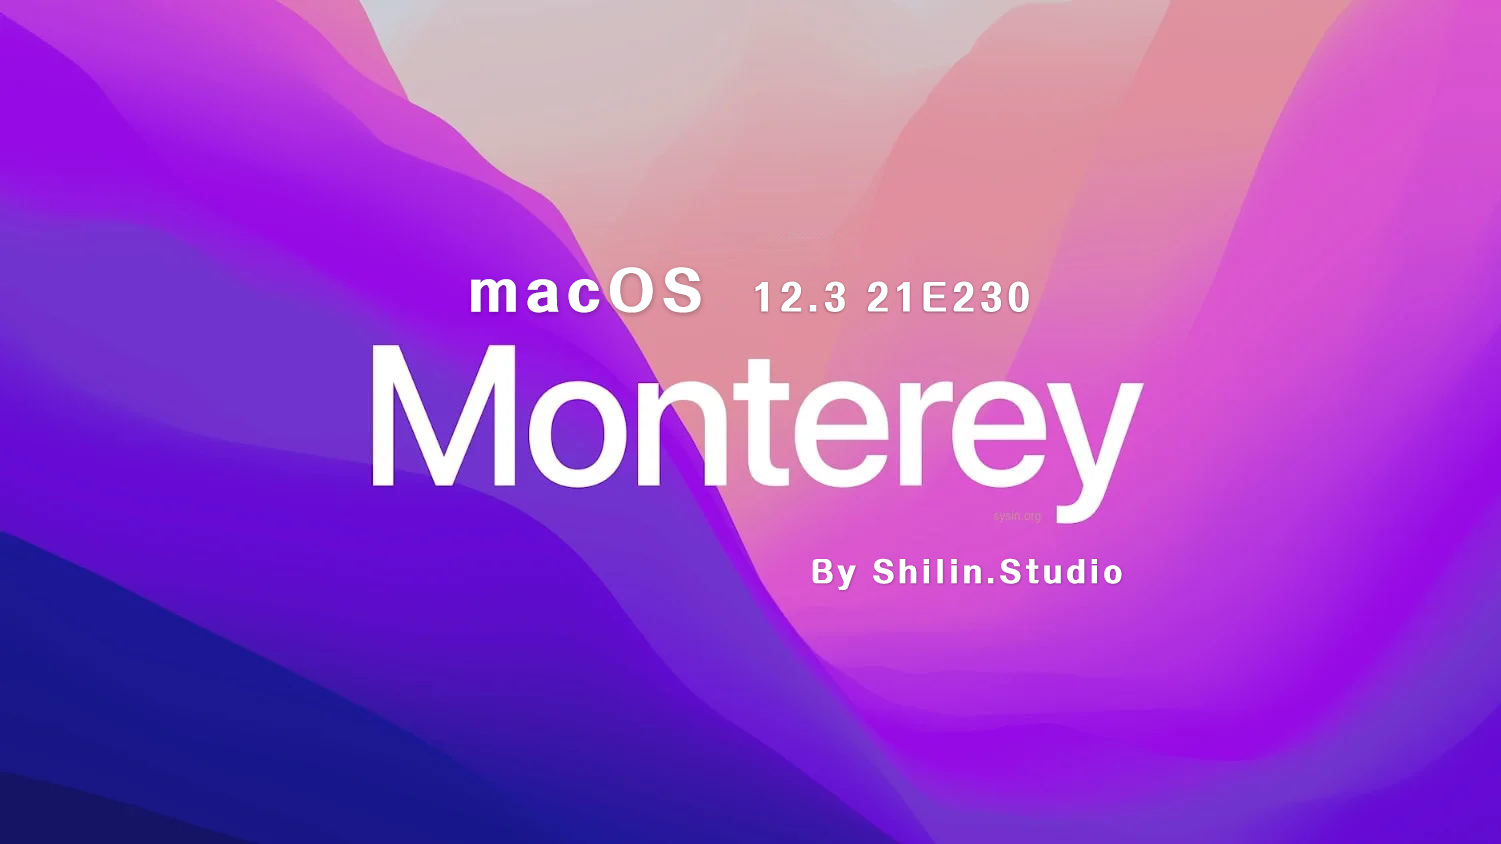 [macOS]macOS_Monterey_12.3_21E230_For_Shilin.Studio.iso可引导可虚拟机安装镜像包（已修复引导并优化）